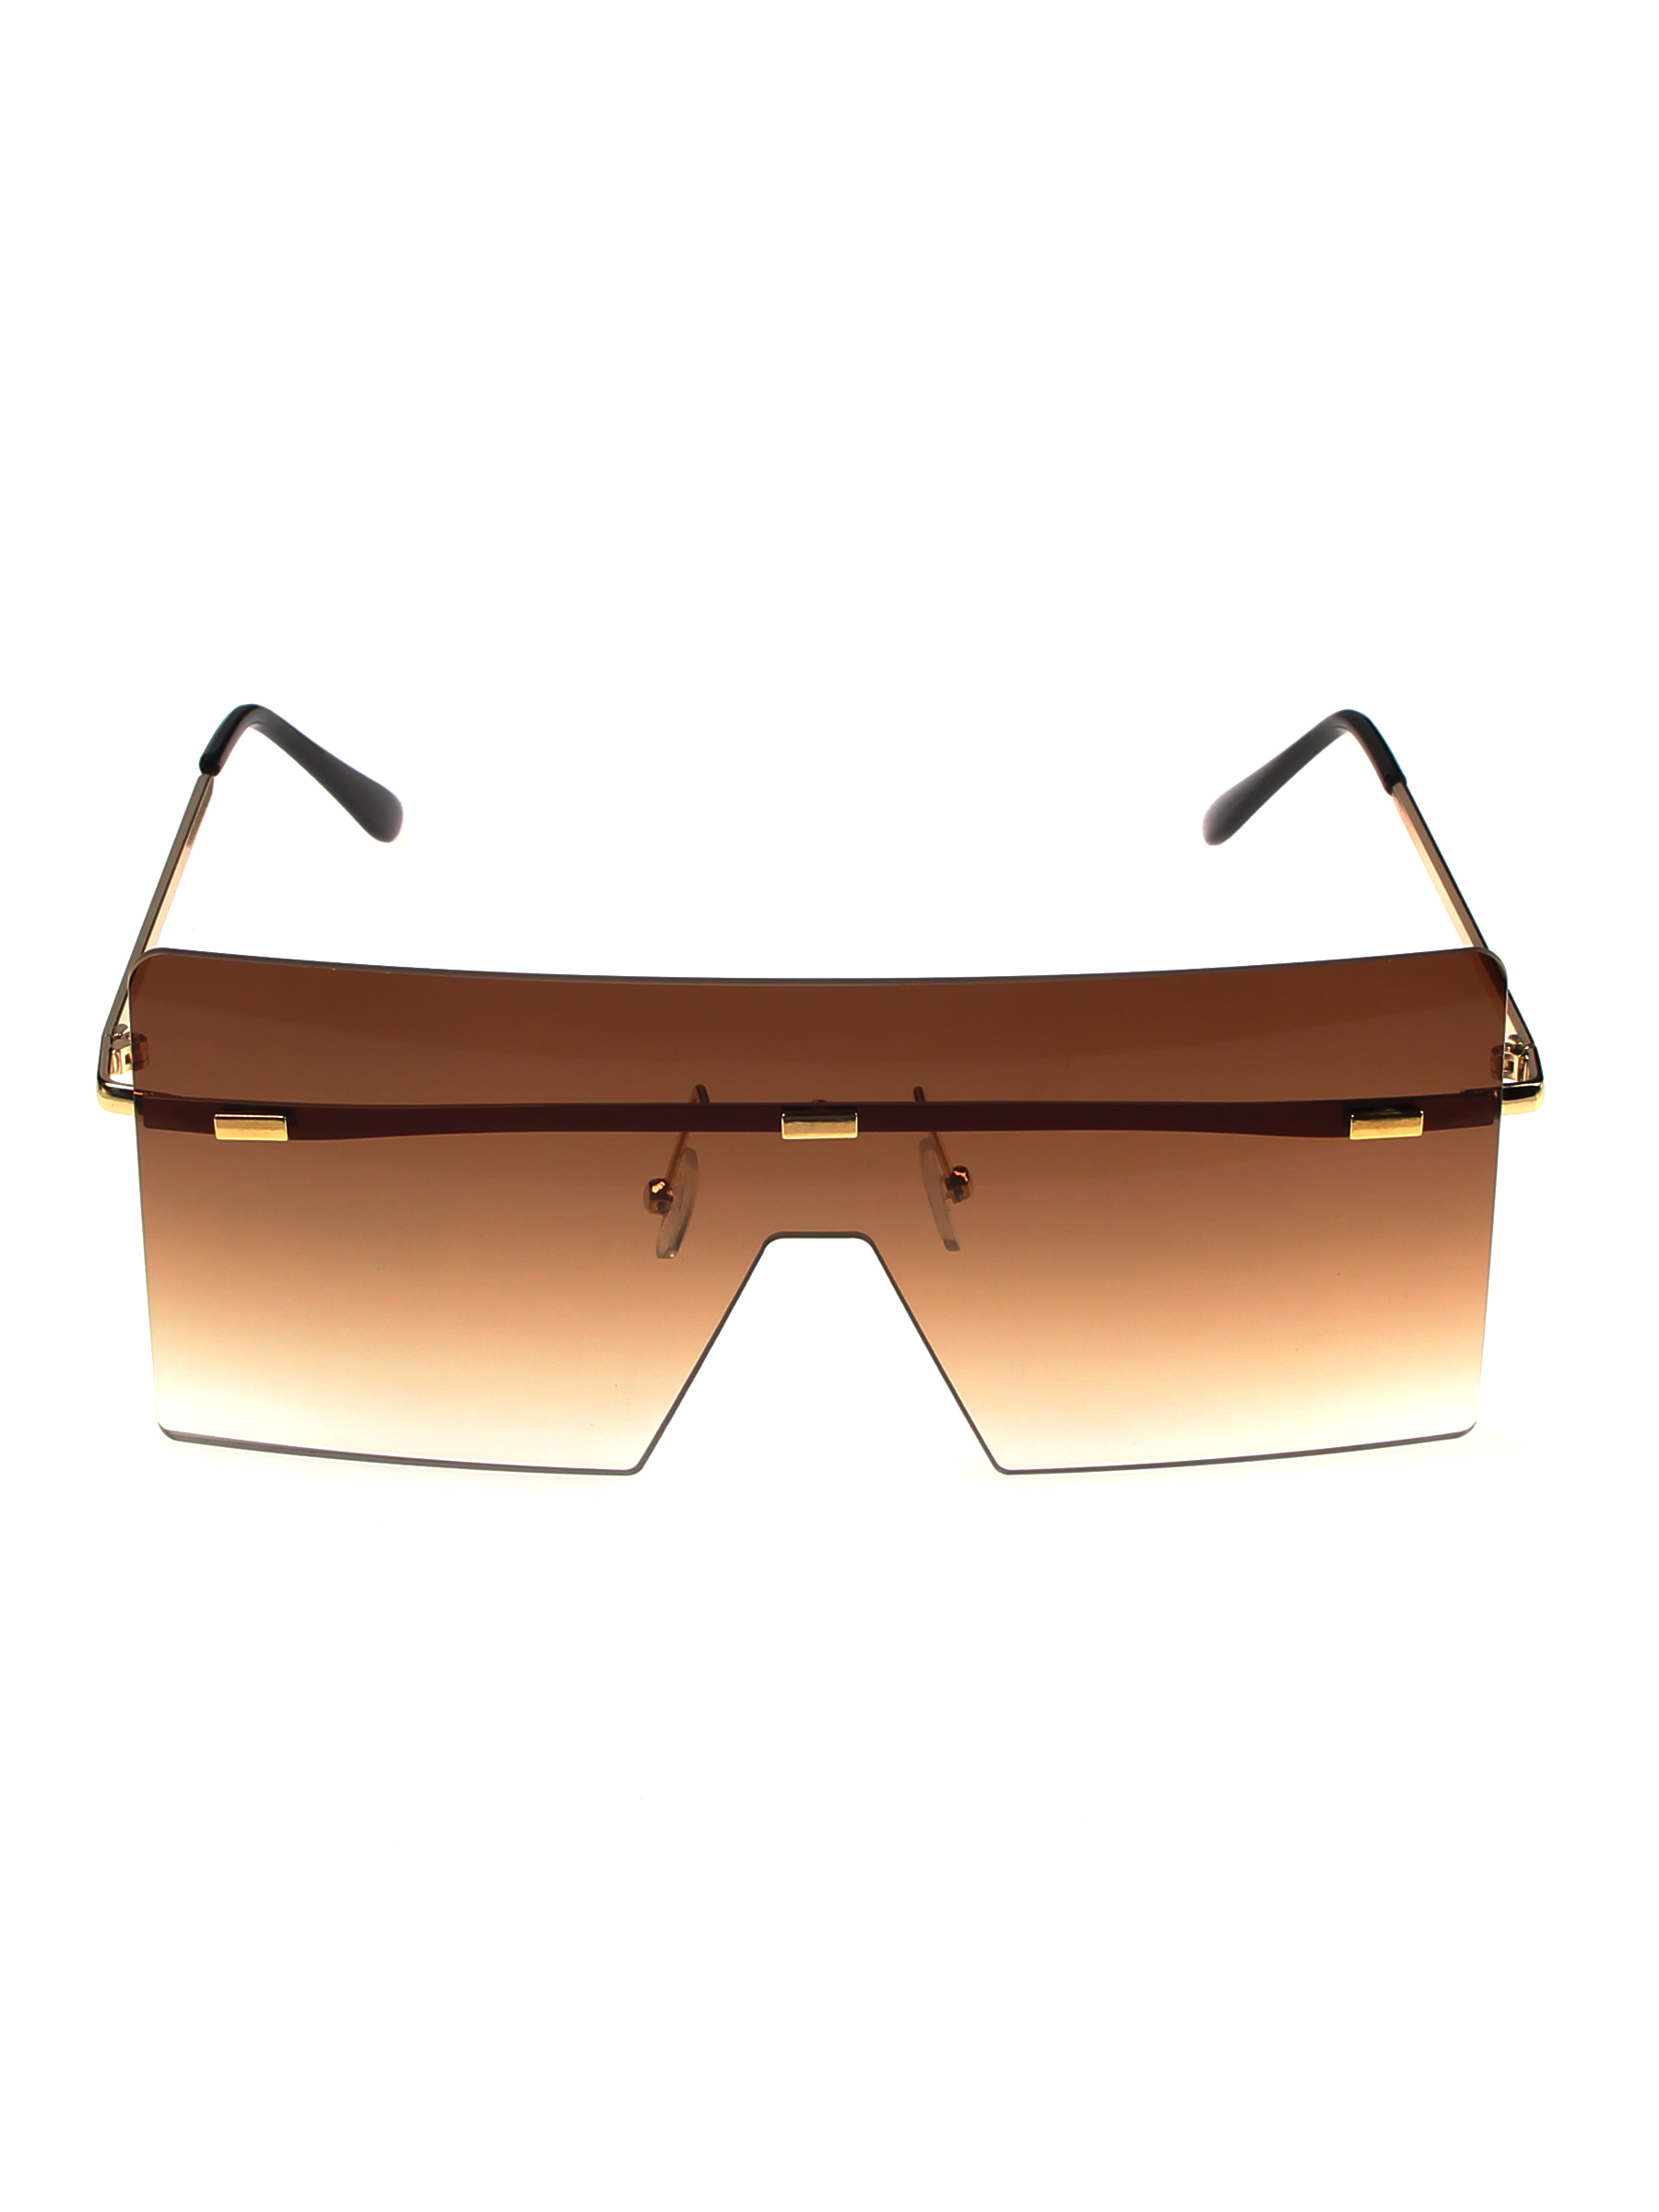 Солнцезащитные очки женские Pretty Mania MDP030 коричневые